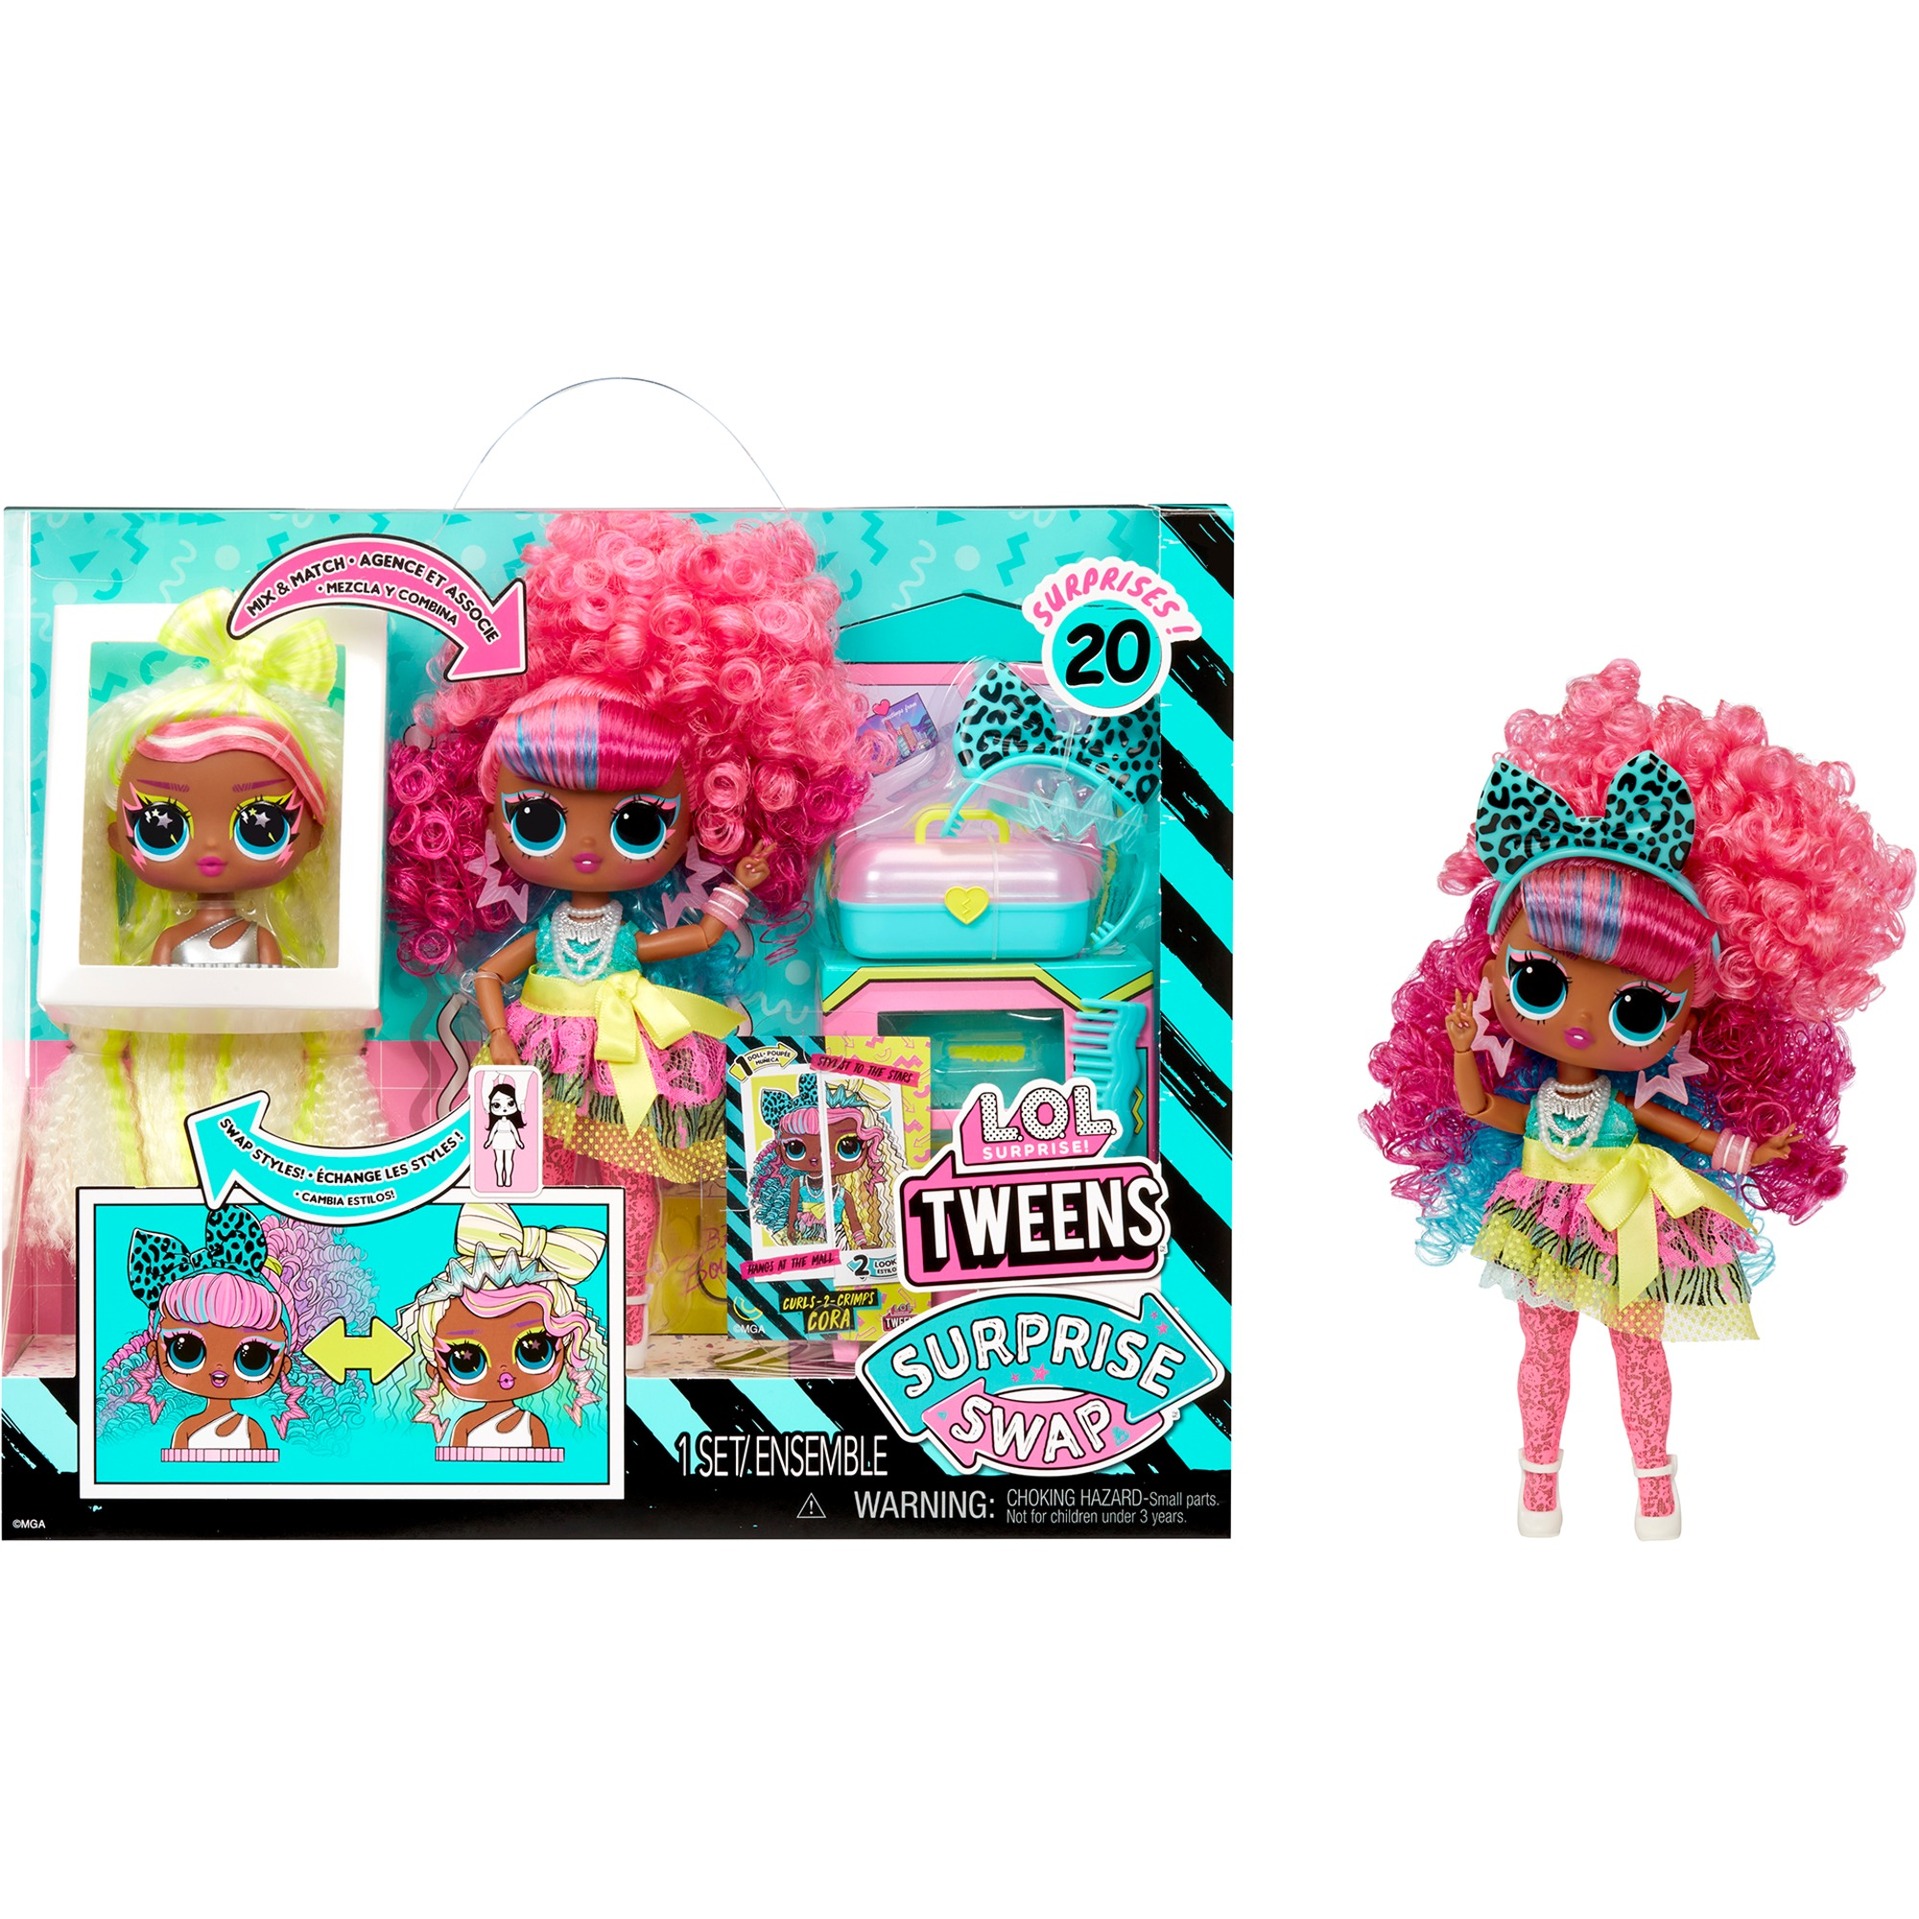 L.O.L. Surprise Tweens Surprise Swap Fashion Doll - Curls-2-Crimps Cora, Puppe von MGA Entertainment